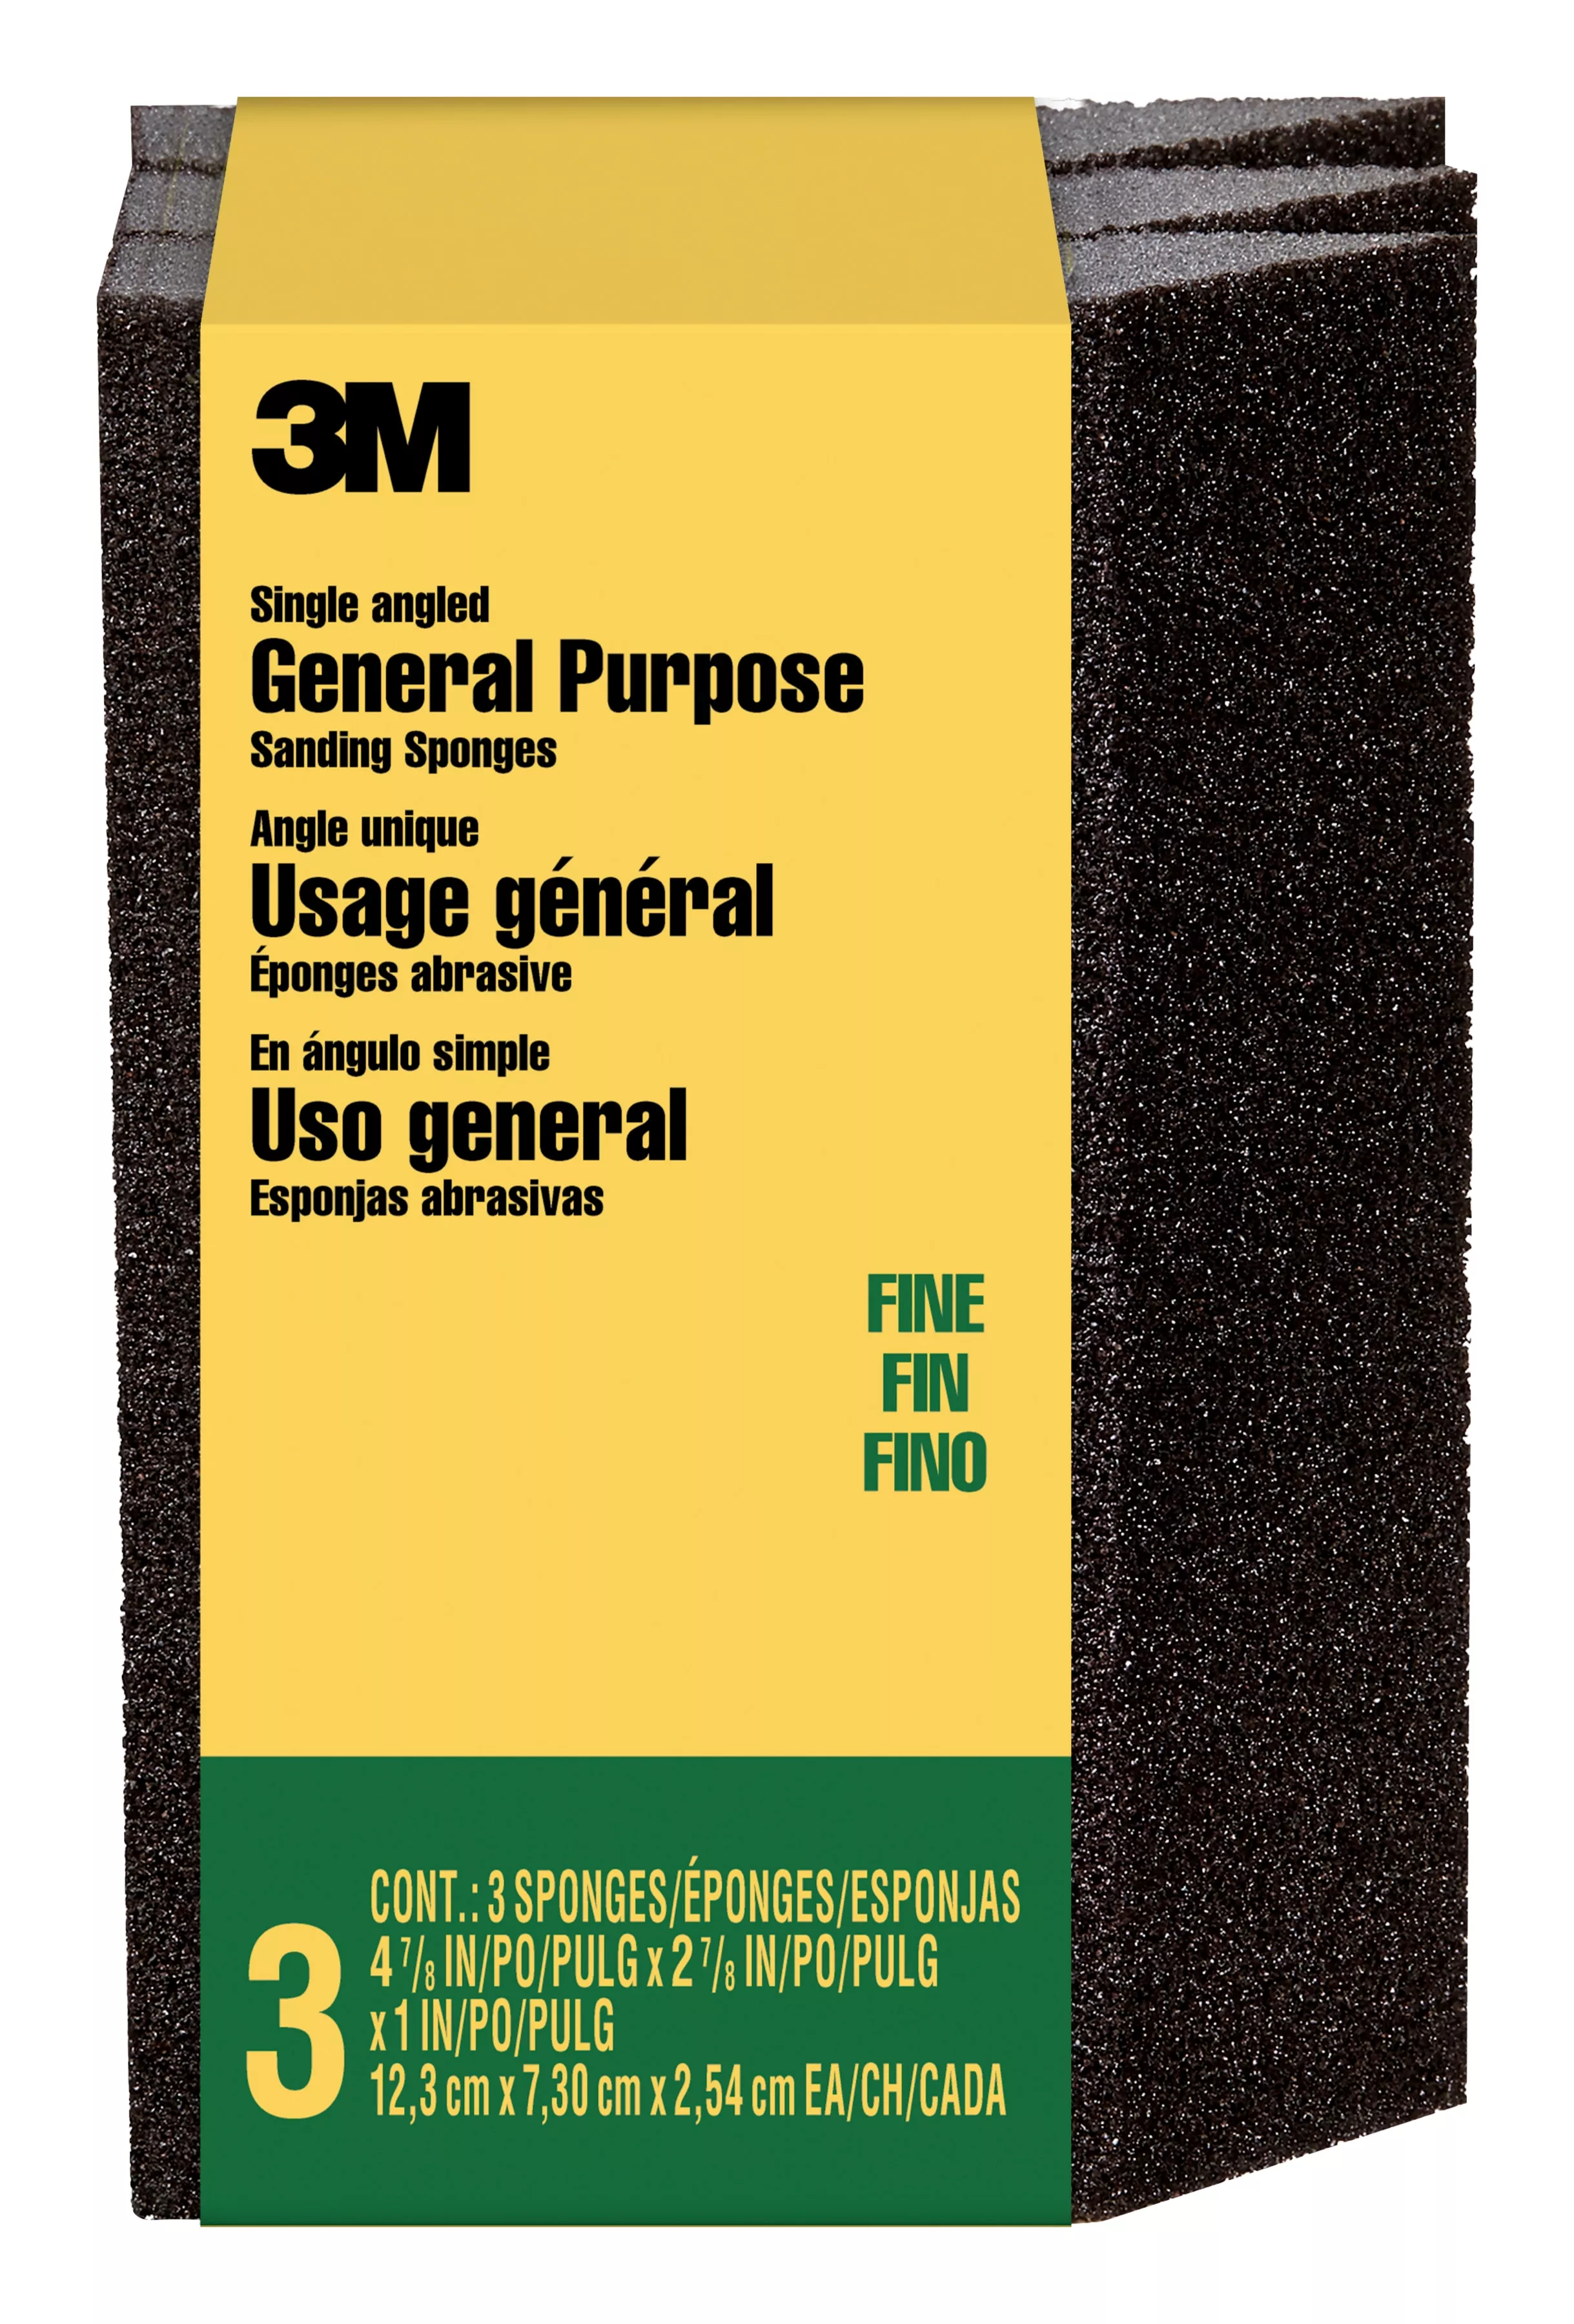 3M™ General Purpose Sanding Sponge CP040-3PK, Single Angle, 2 7/8 in x 4 7/8 in x 1 in, Fine, 3/pk, 6 pks/cs